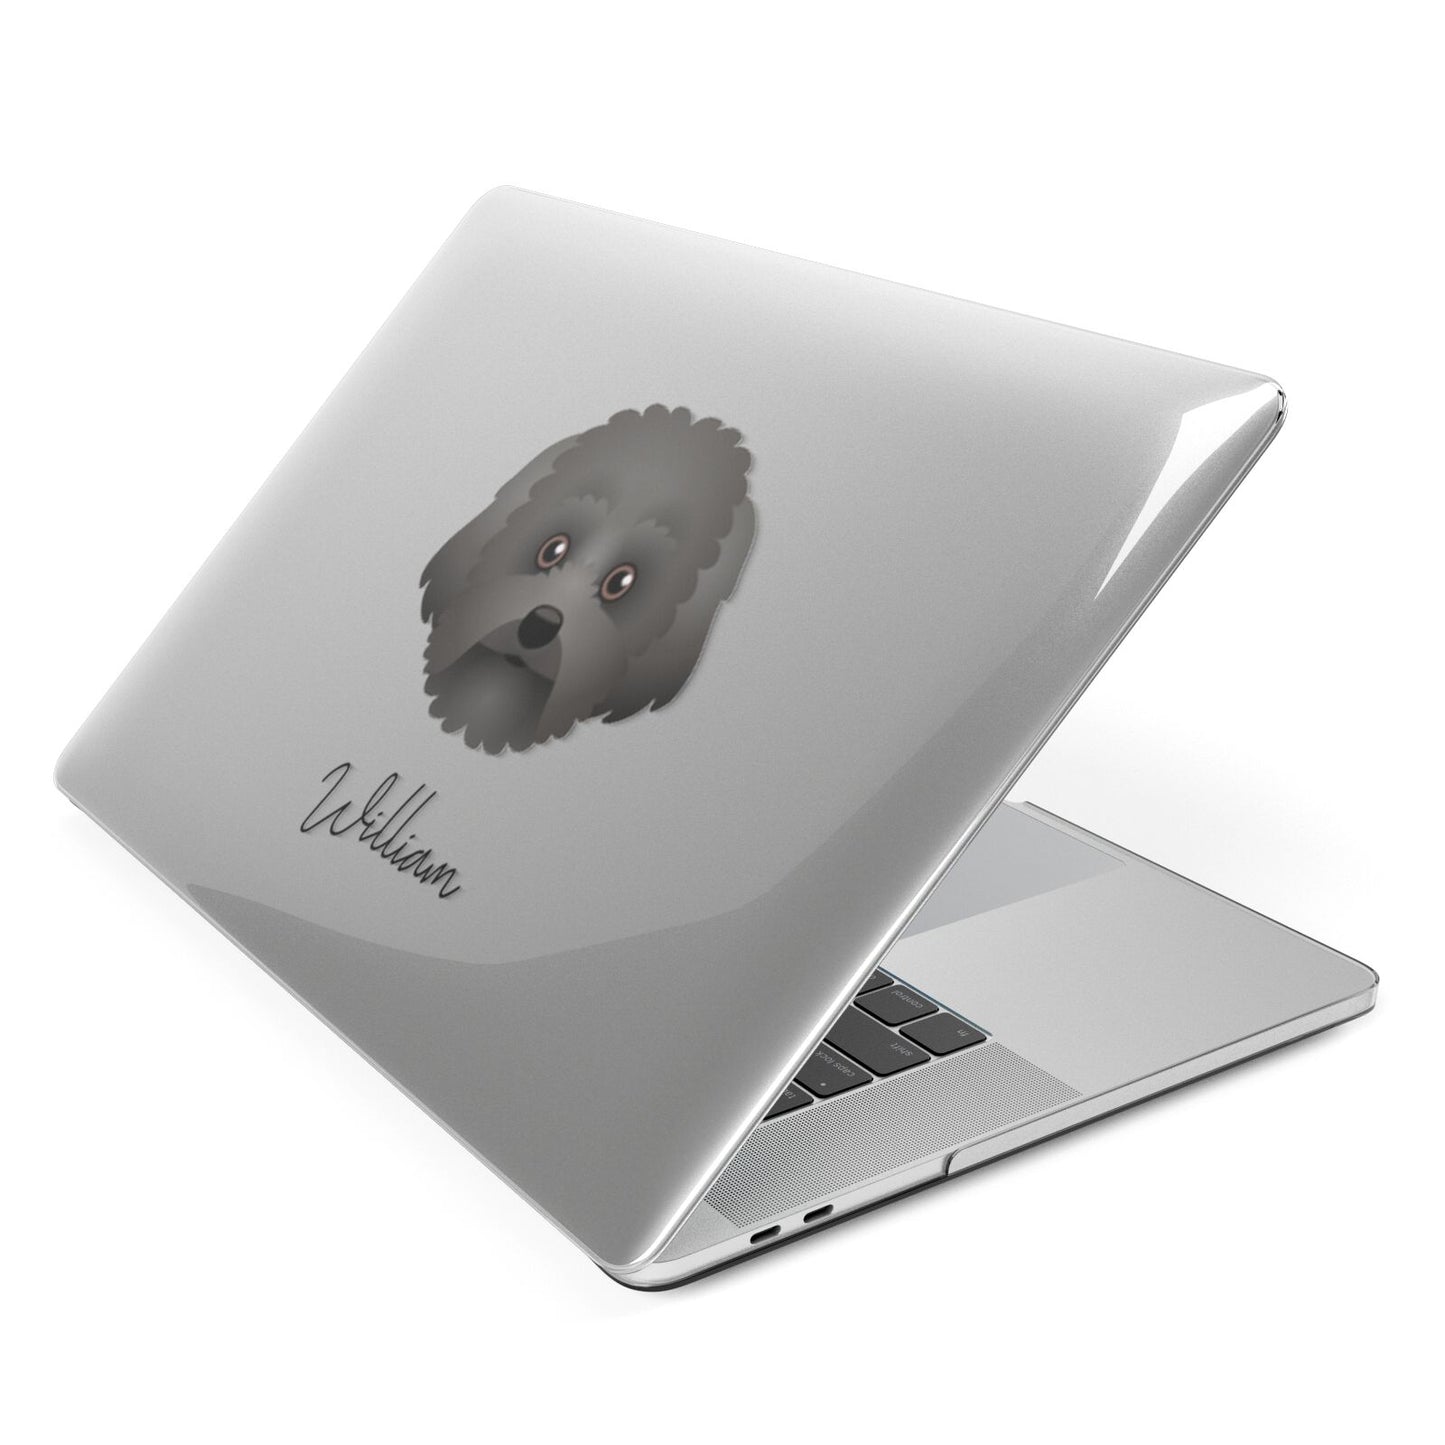 Malti Poo Personalised Apple MacBook Case Side View